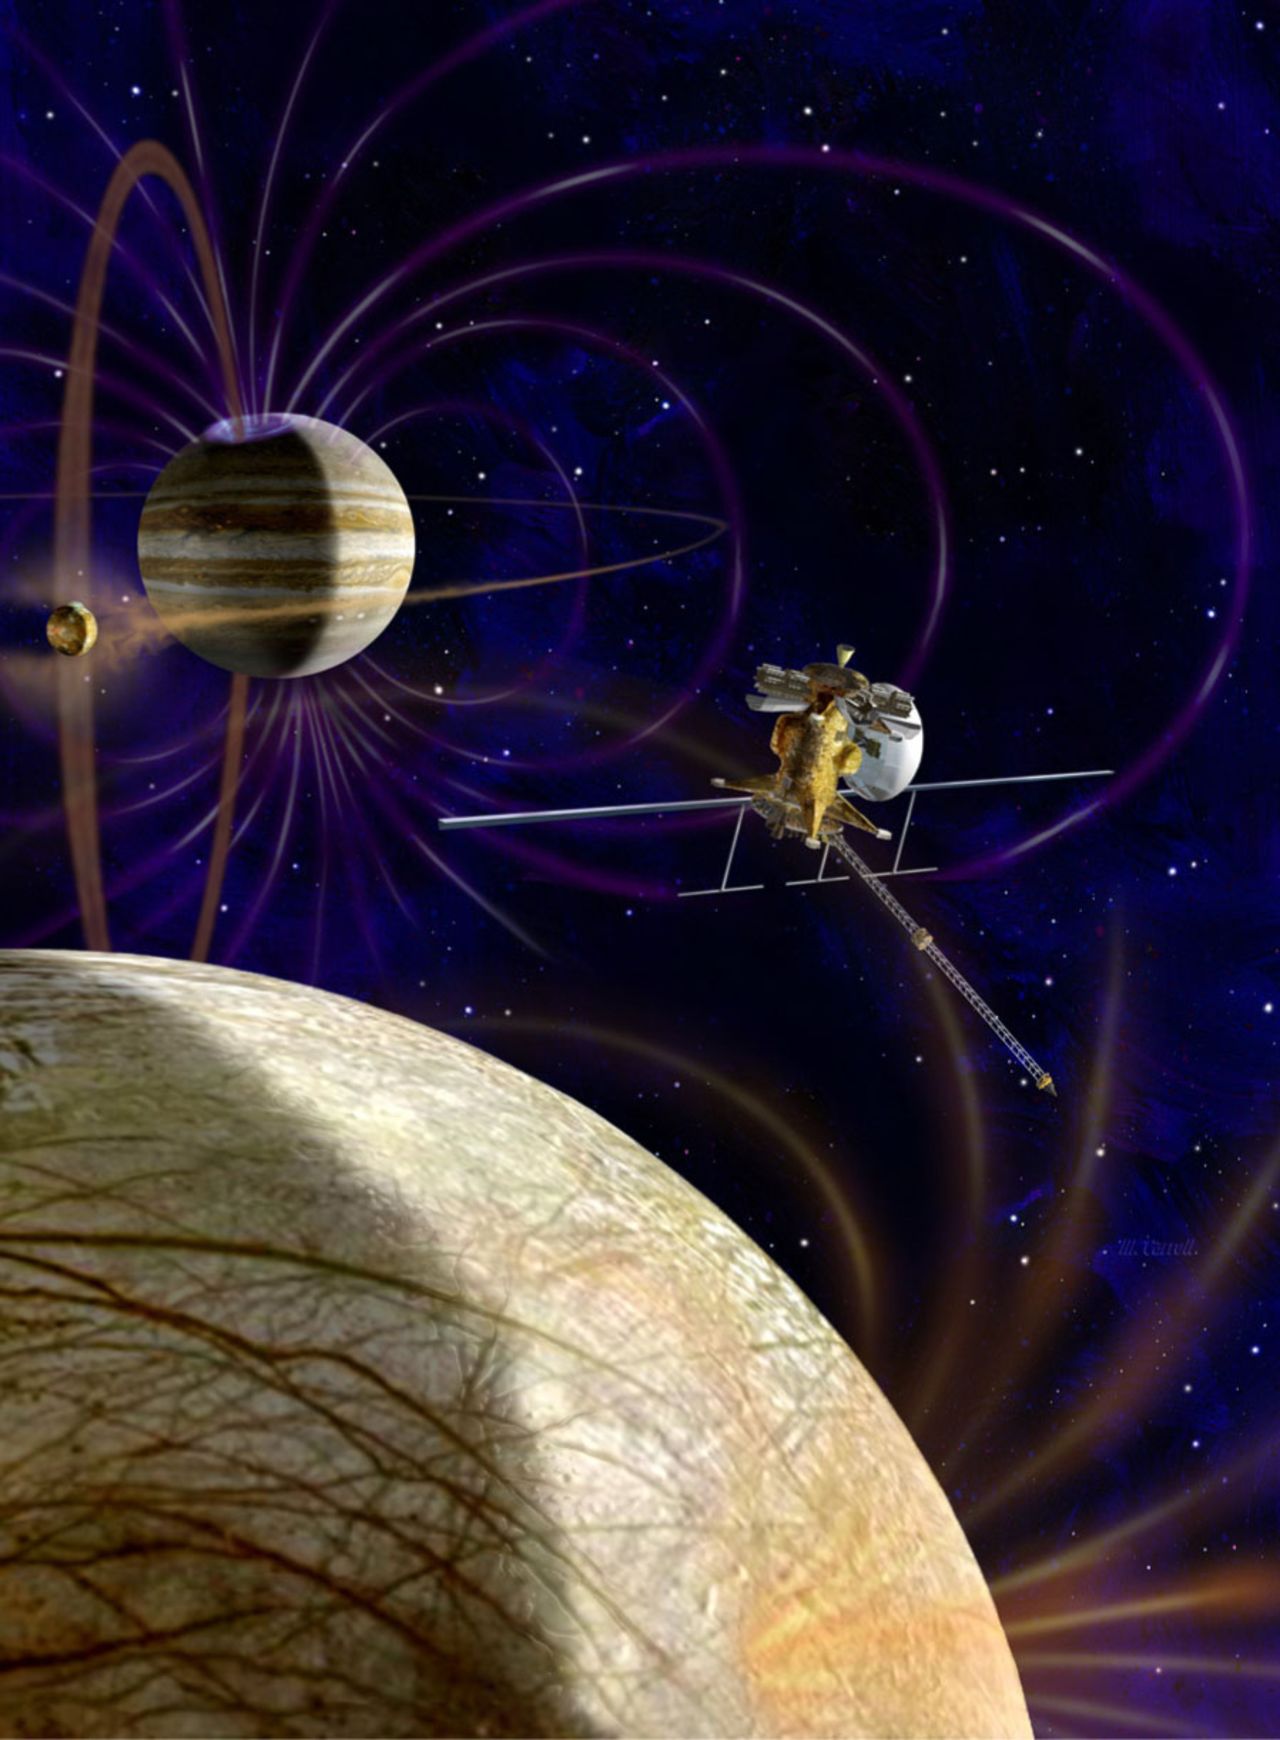 Agencias espaciales han querido enviar un módulo orbital a Europa y a otra de las lunas de Júpiter. Un artista muestra cómo se podría ver esto.